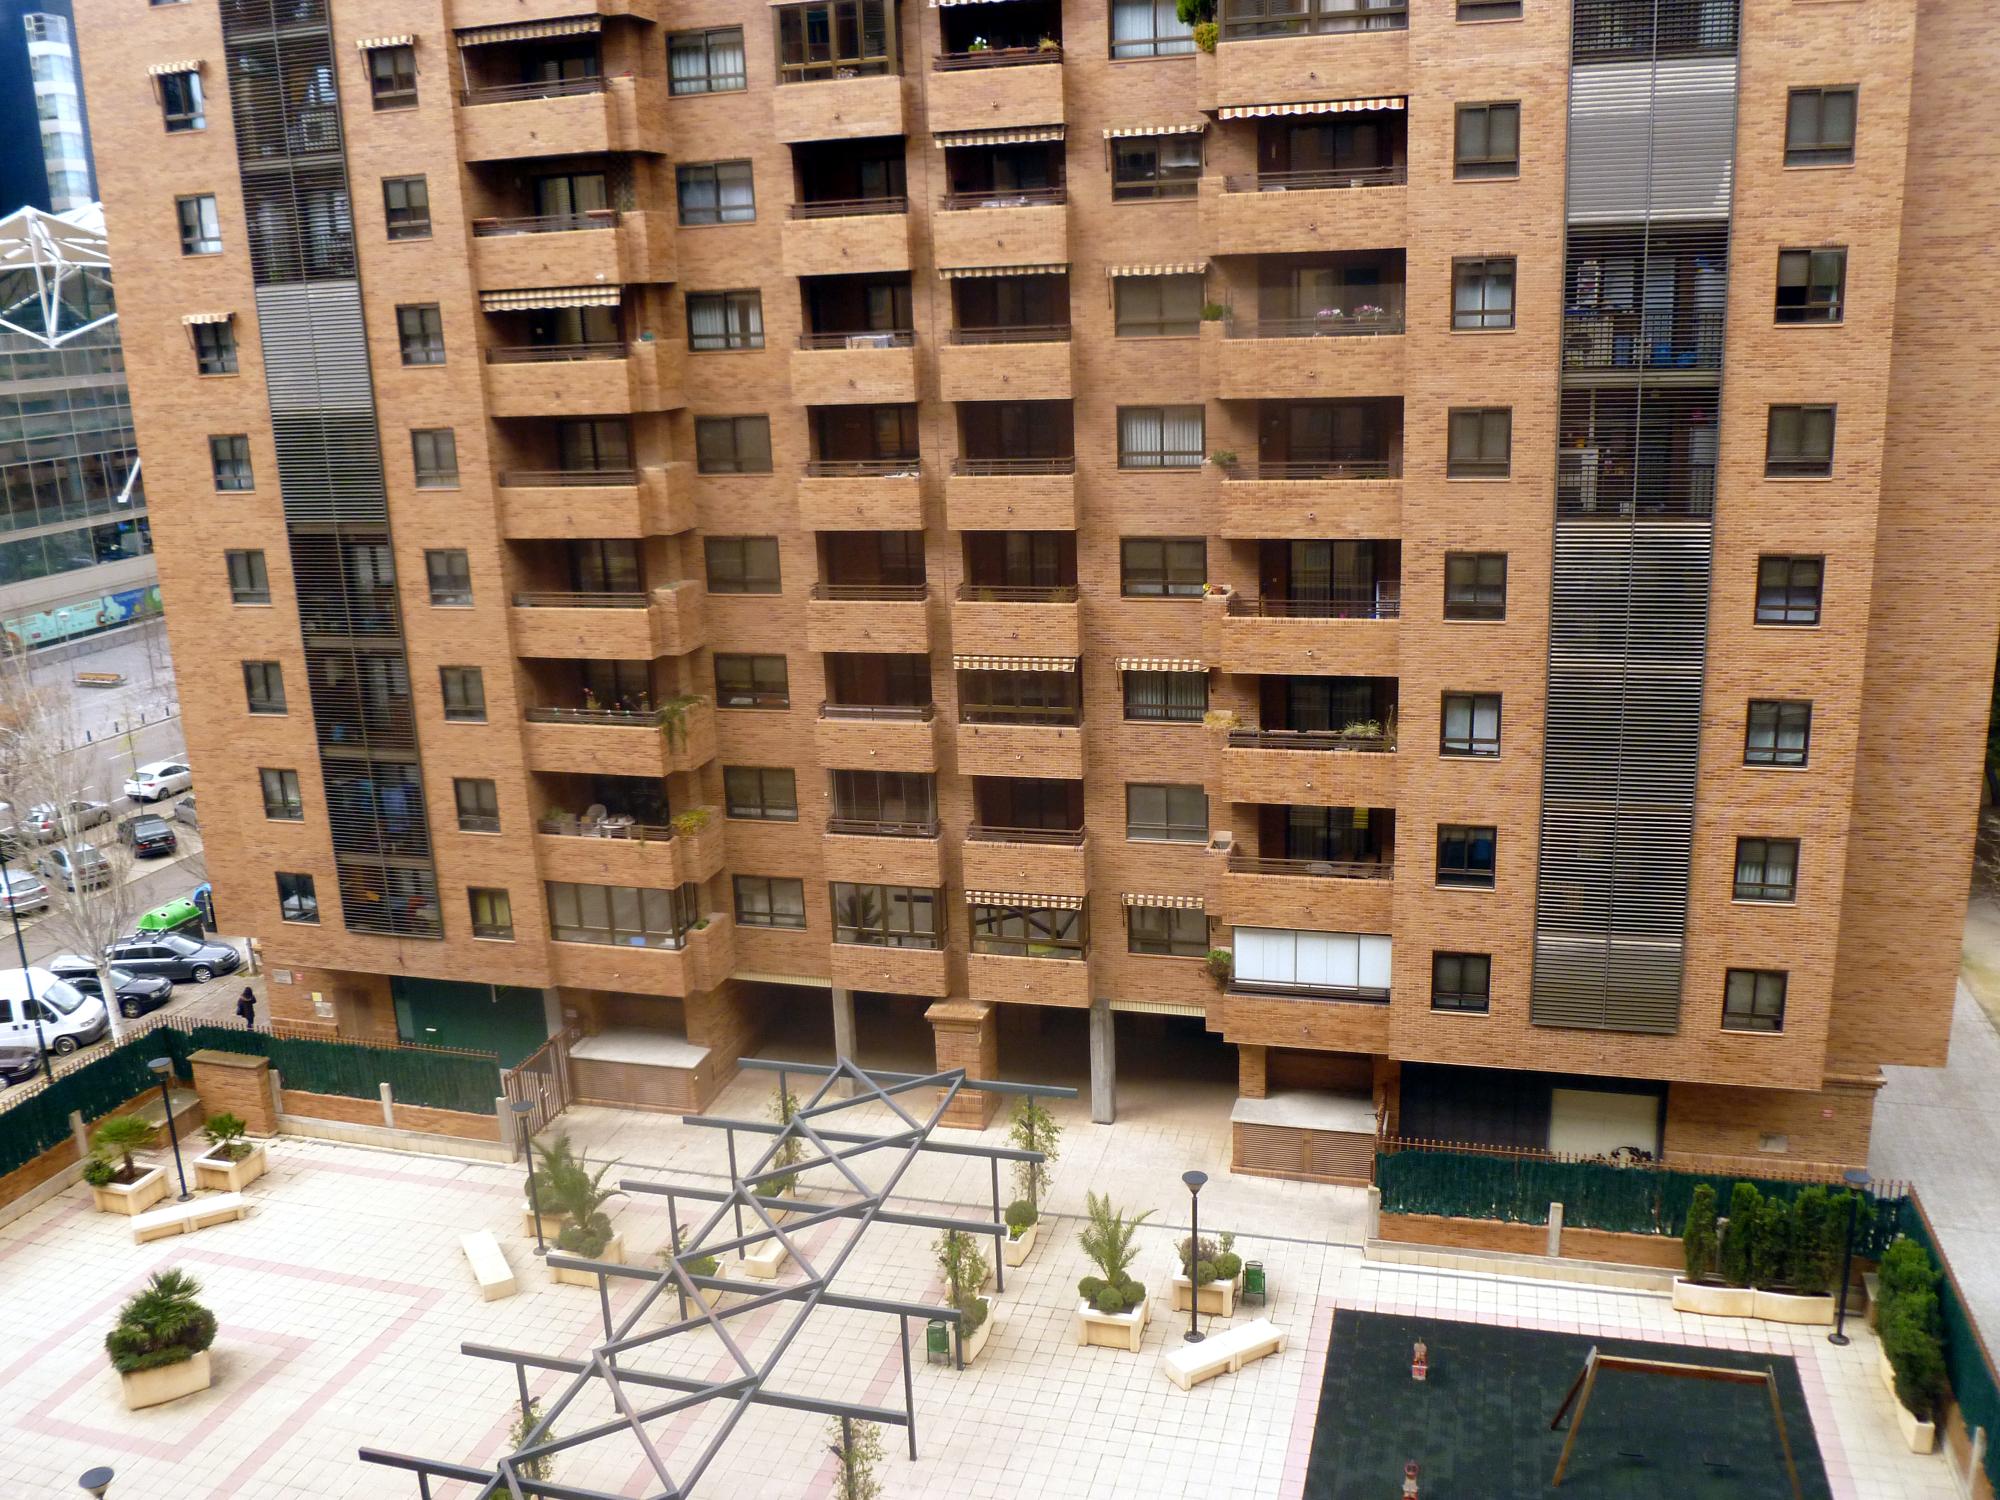 Aragon - Spanish Apartment Block #2